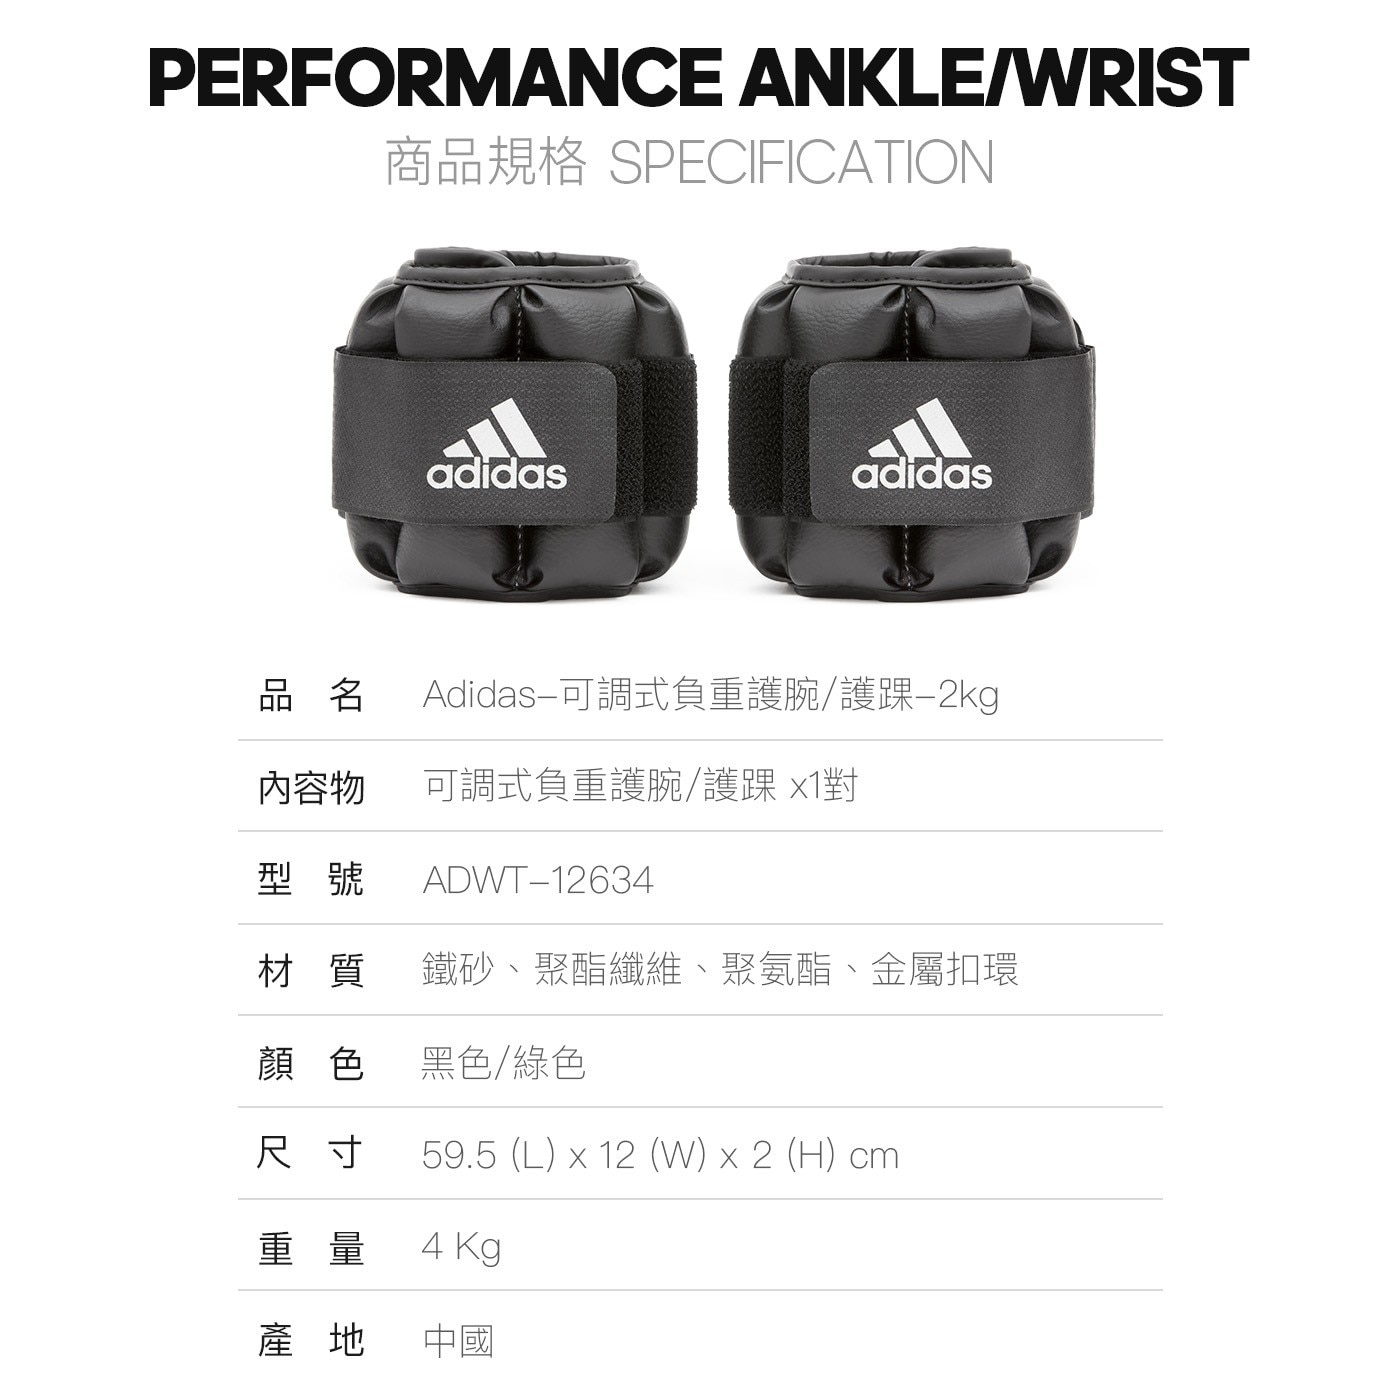 Adidas 可調式負重護腕/護踝 2公斤 X 2入有氧重訓皆適用提升運動強度與增加刺激肌肉效果日常有氧慢跑健身球類運動使用都可以配戴